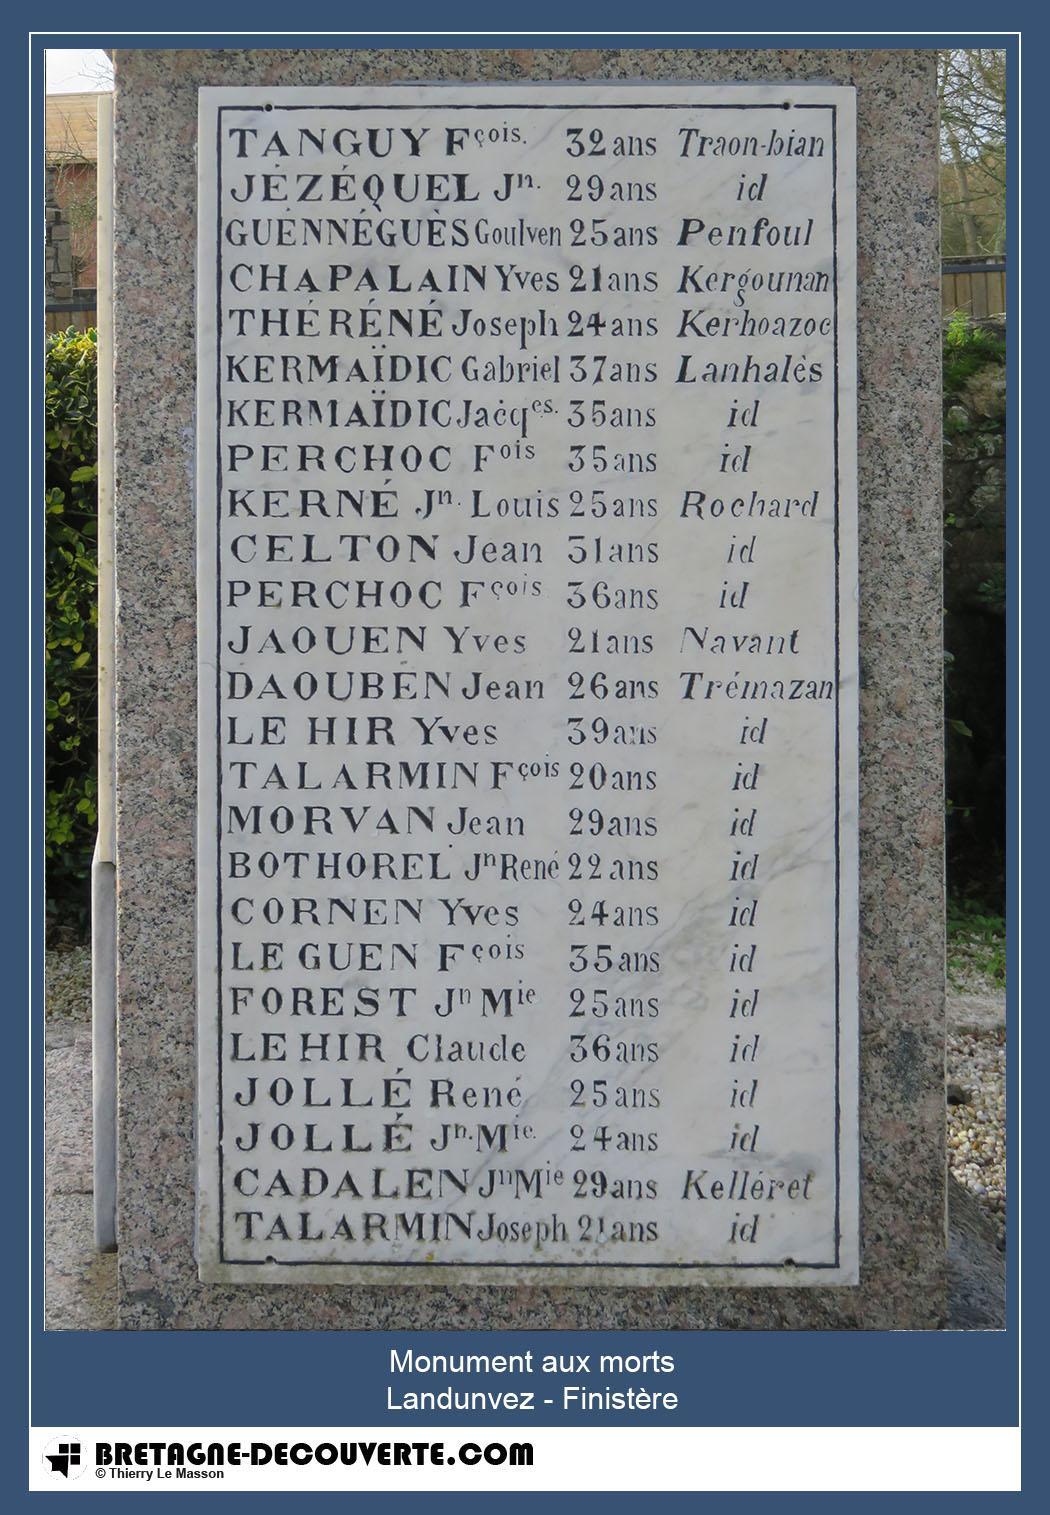 Les noms gravés sur le monument aux morts de Landunvez